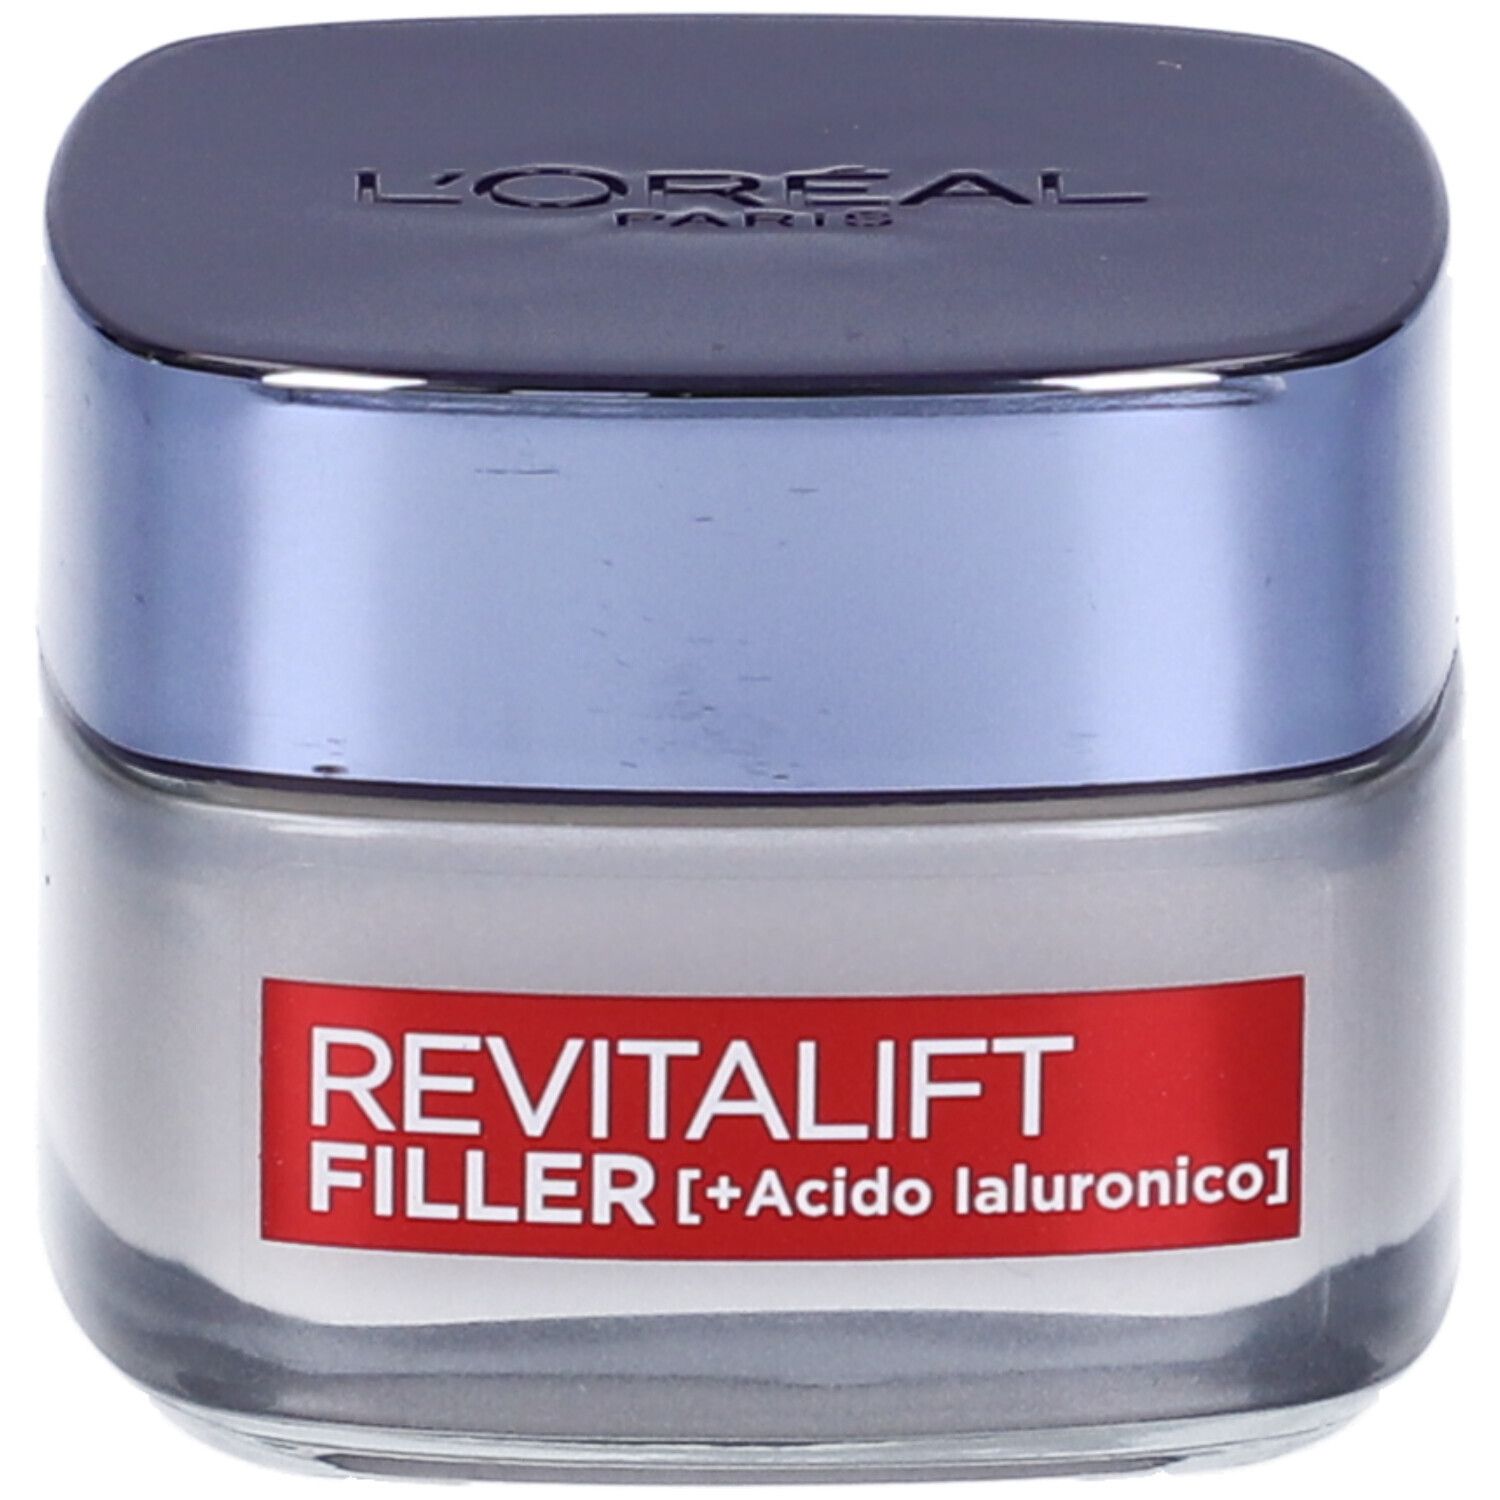 Image of L'Oréal Paris Crema Viso Giorno Revitalift Filler, Azione Antirughe Rivolumizzante con Acido Ialuronico Concentrato, 50 ml